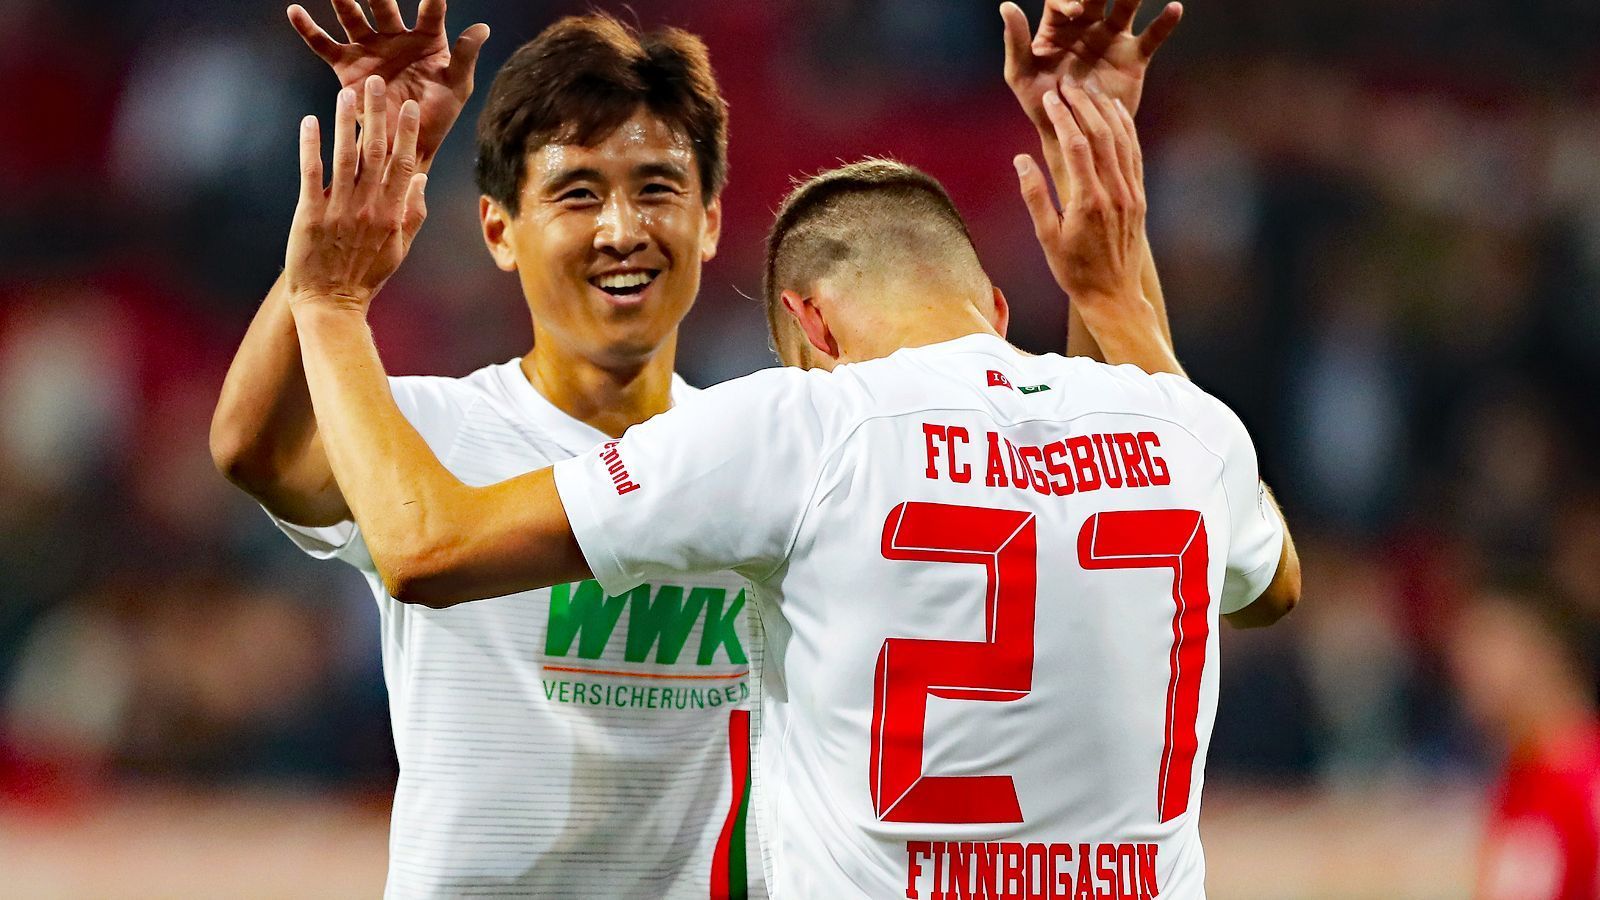 
                <strong>FC Augsburg</strong><br>
                Abstellungsgebühren: 532.000 EuroAbgestellte Spieler (unter anderem): Ja-Cheol Koo (li., Südkorea) und Alfred Finnbogason (re., Island)
              